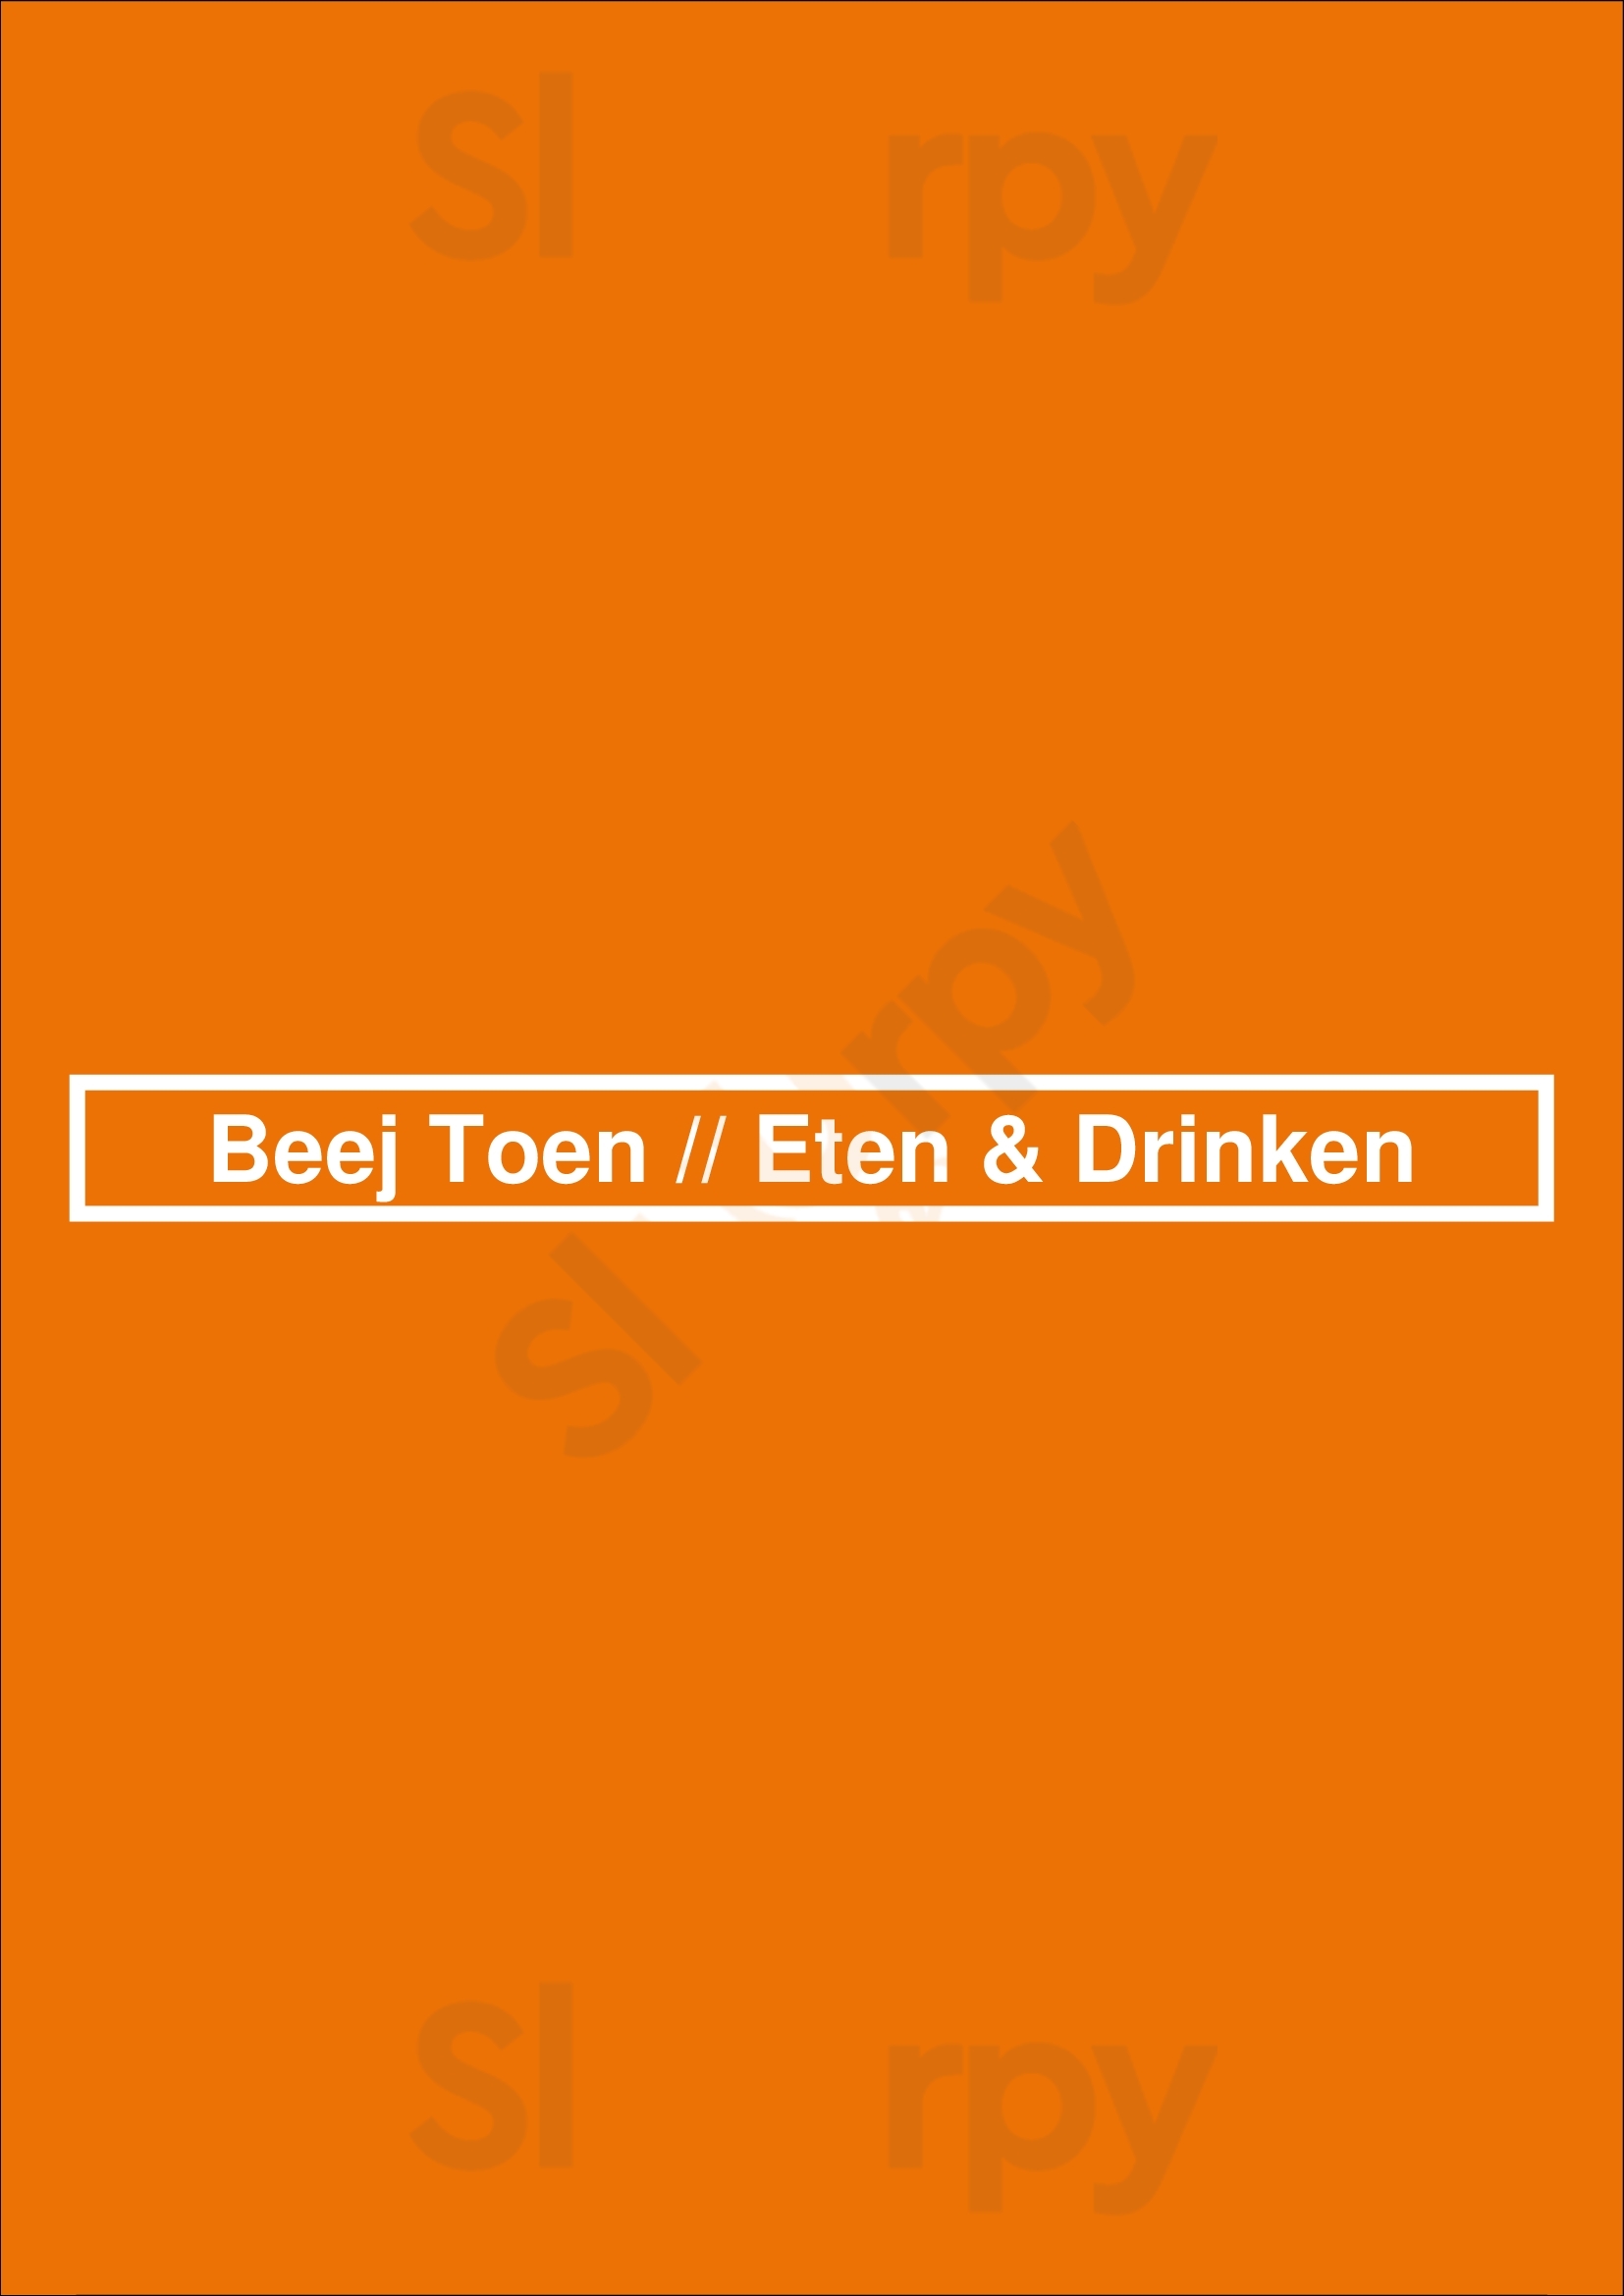 Beej Toen // Eten & Drinken Grubbenvorst Menu - 1